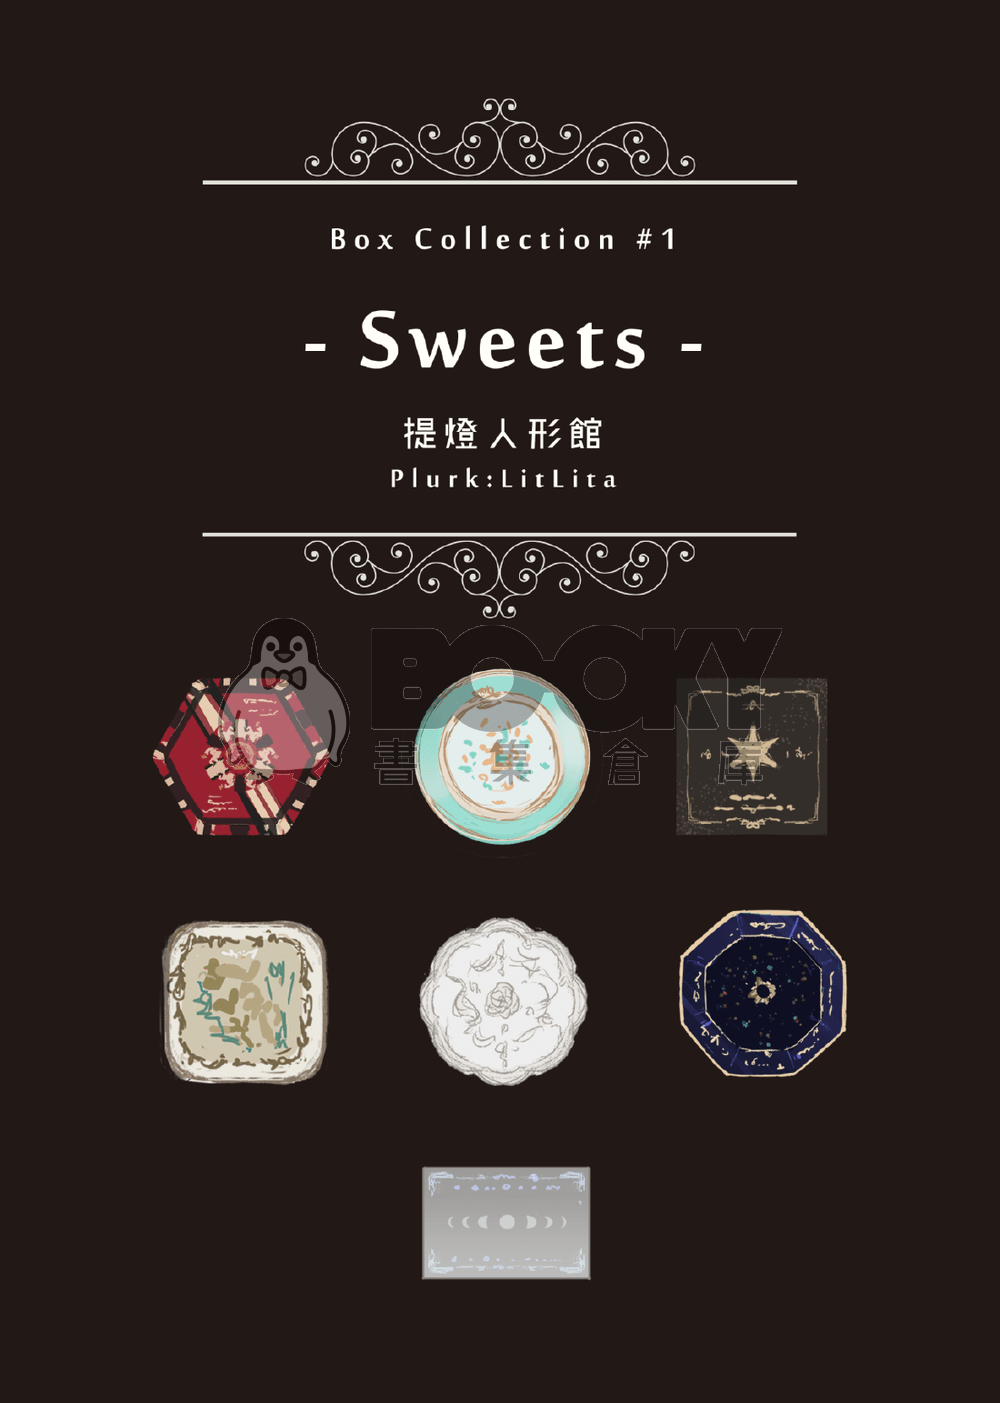 迷你主題畫冊  Box Collection #1  Sweets 試閱圖片